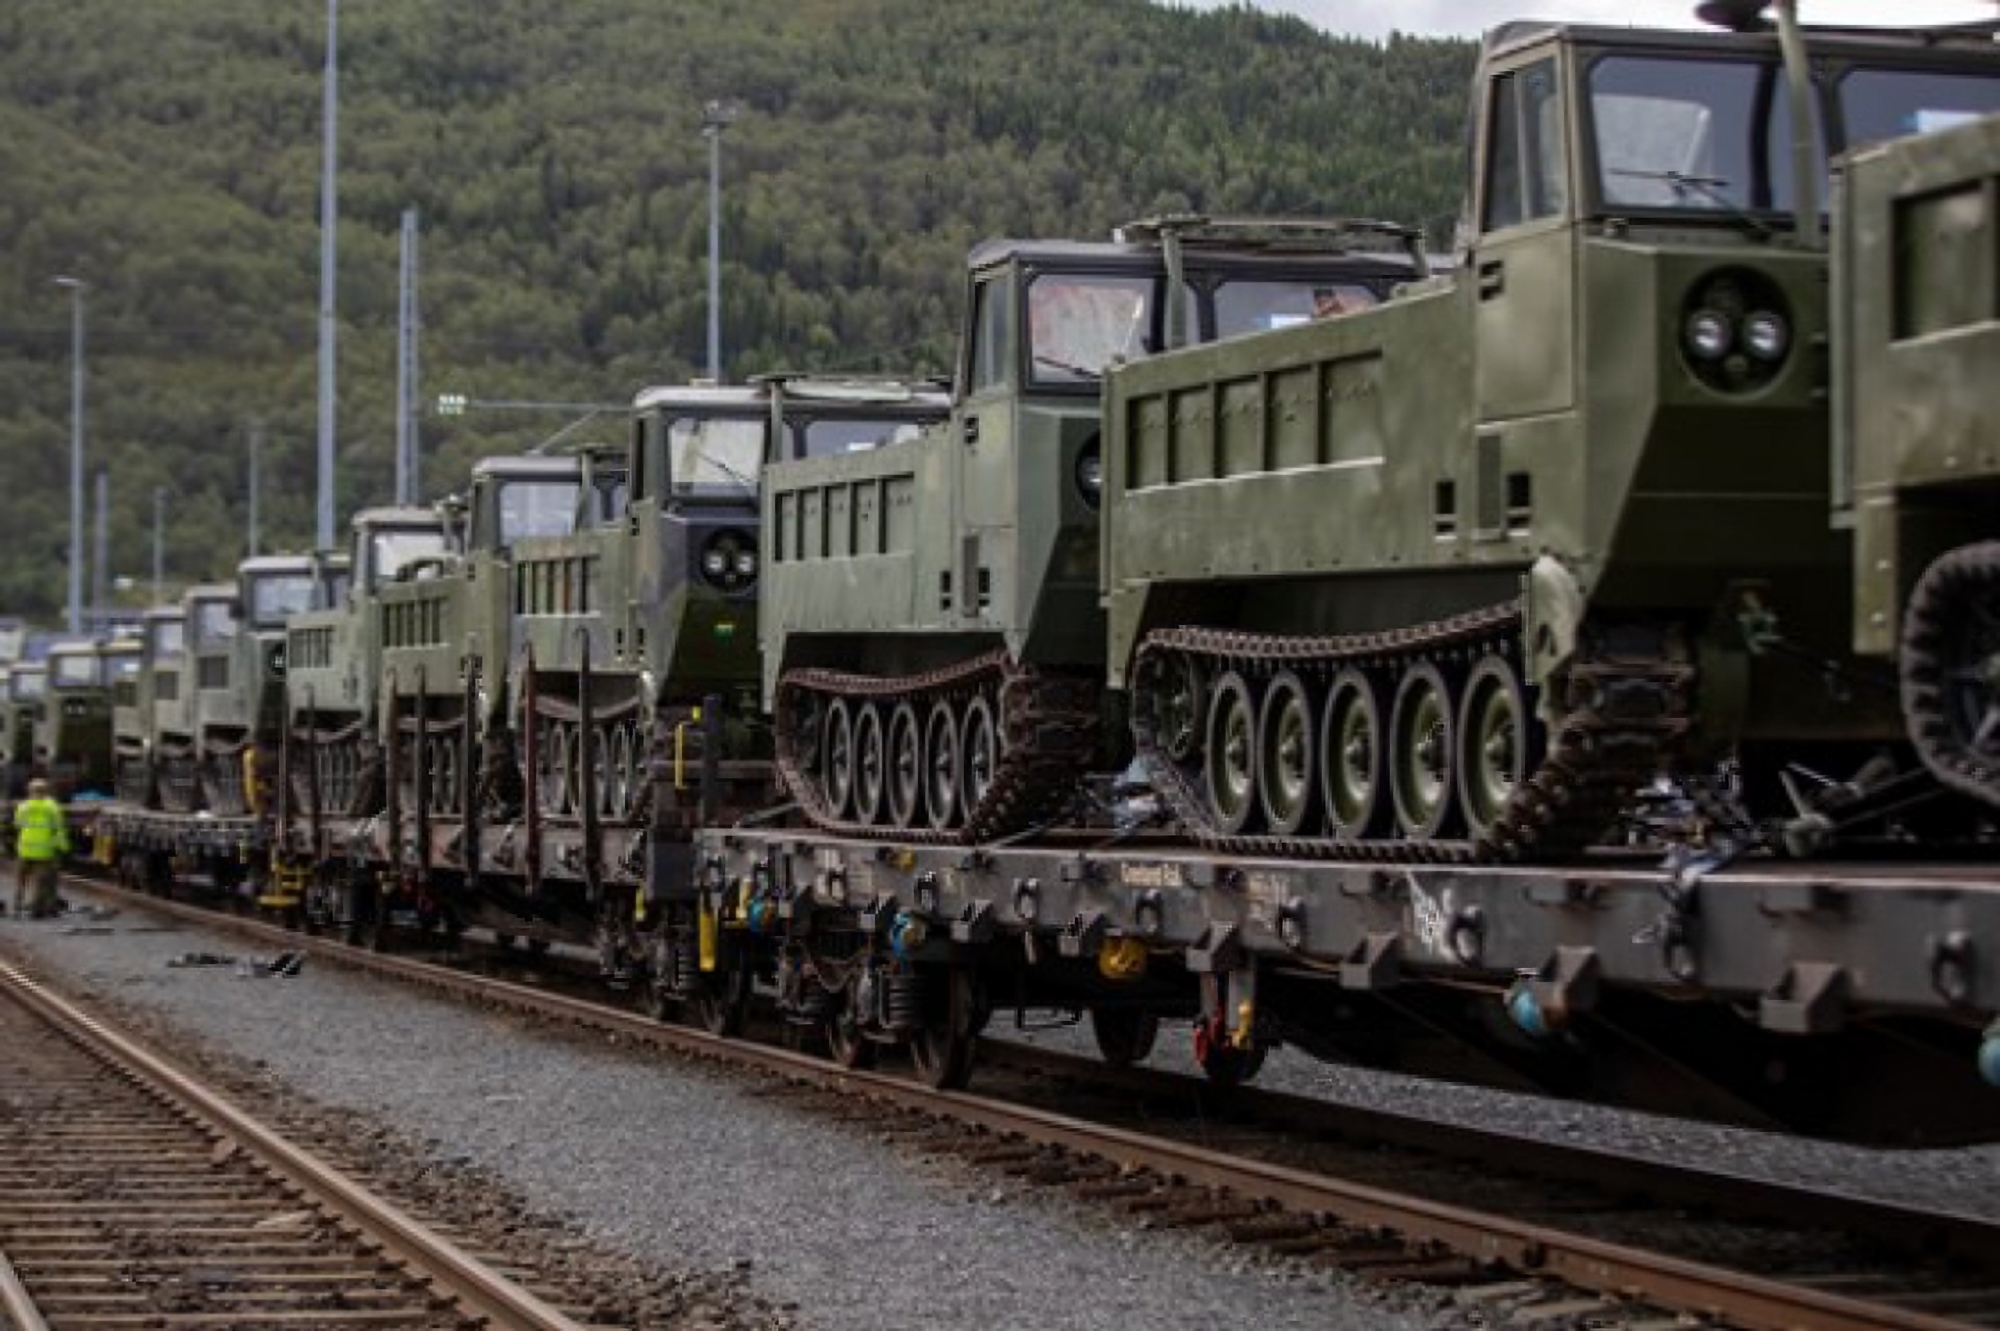 Noruega transferirá 50 transportadores de orugas M548 a las AFU, están basados en el M113 APC